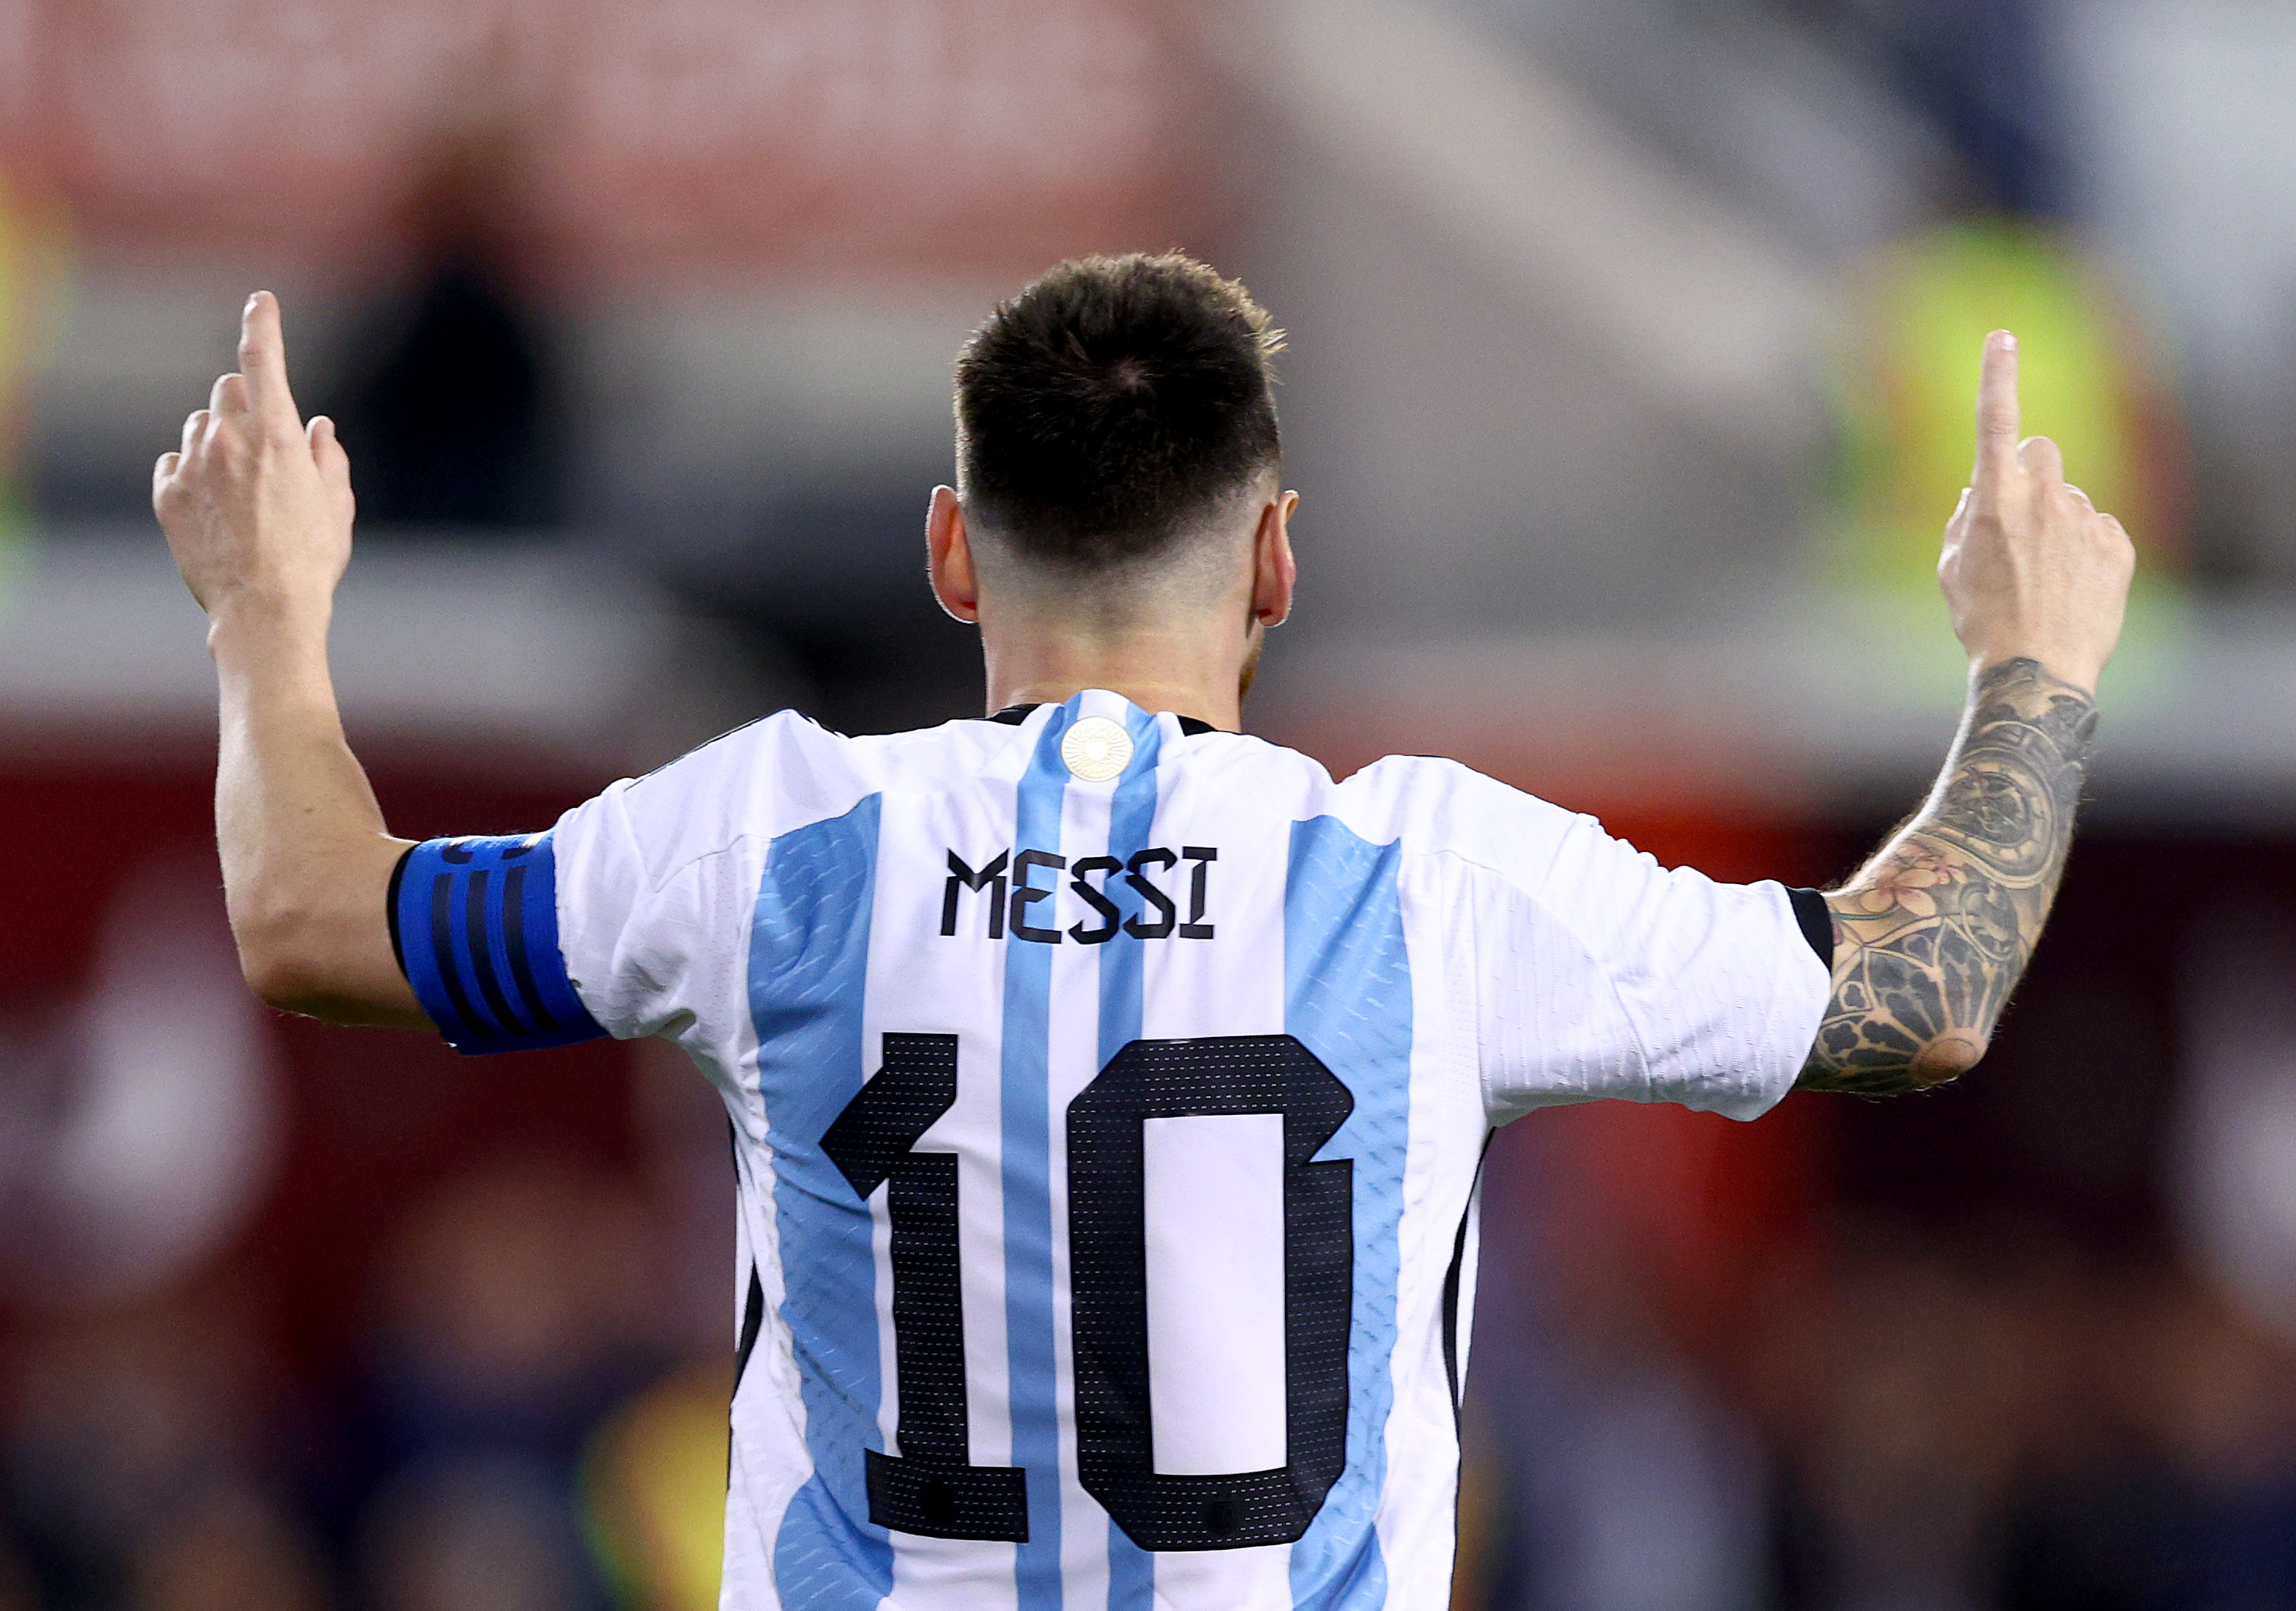 Quién es mejor Messi? El de Adidas para presentar los botines del astro argentino en Qatar - CNN Video